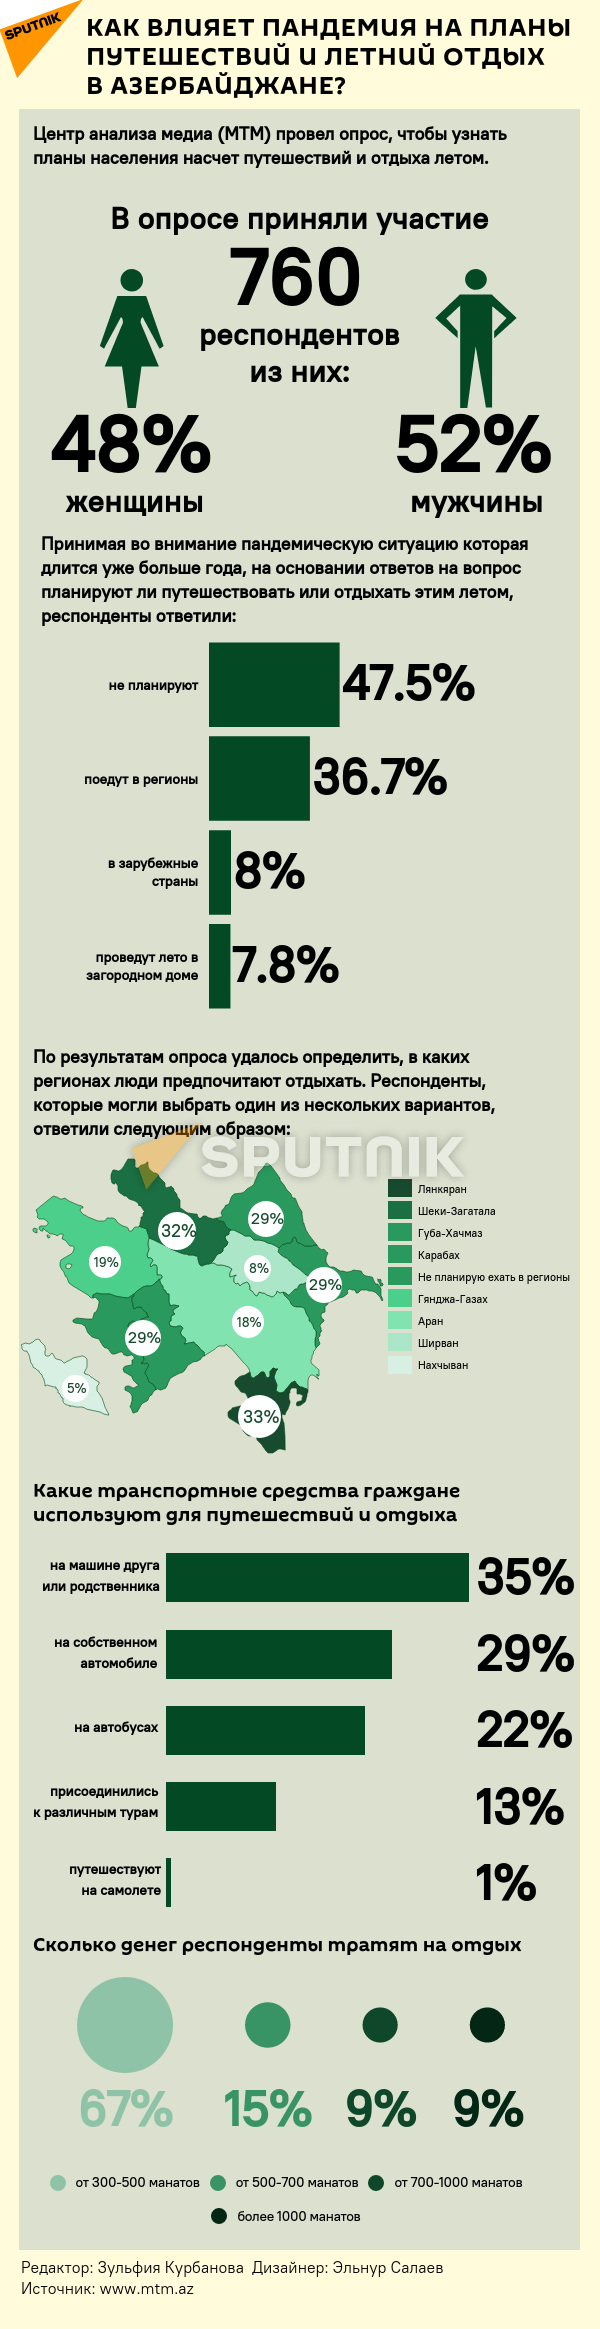 Инфографика: Влияние пандемии на отдых - Sputnik Азербайджан, 1920, 22.07.2021